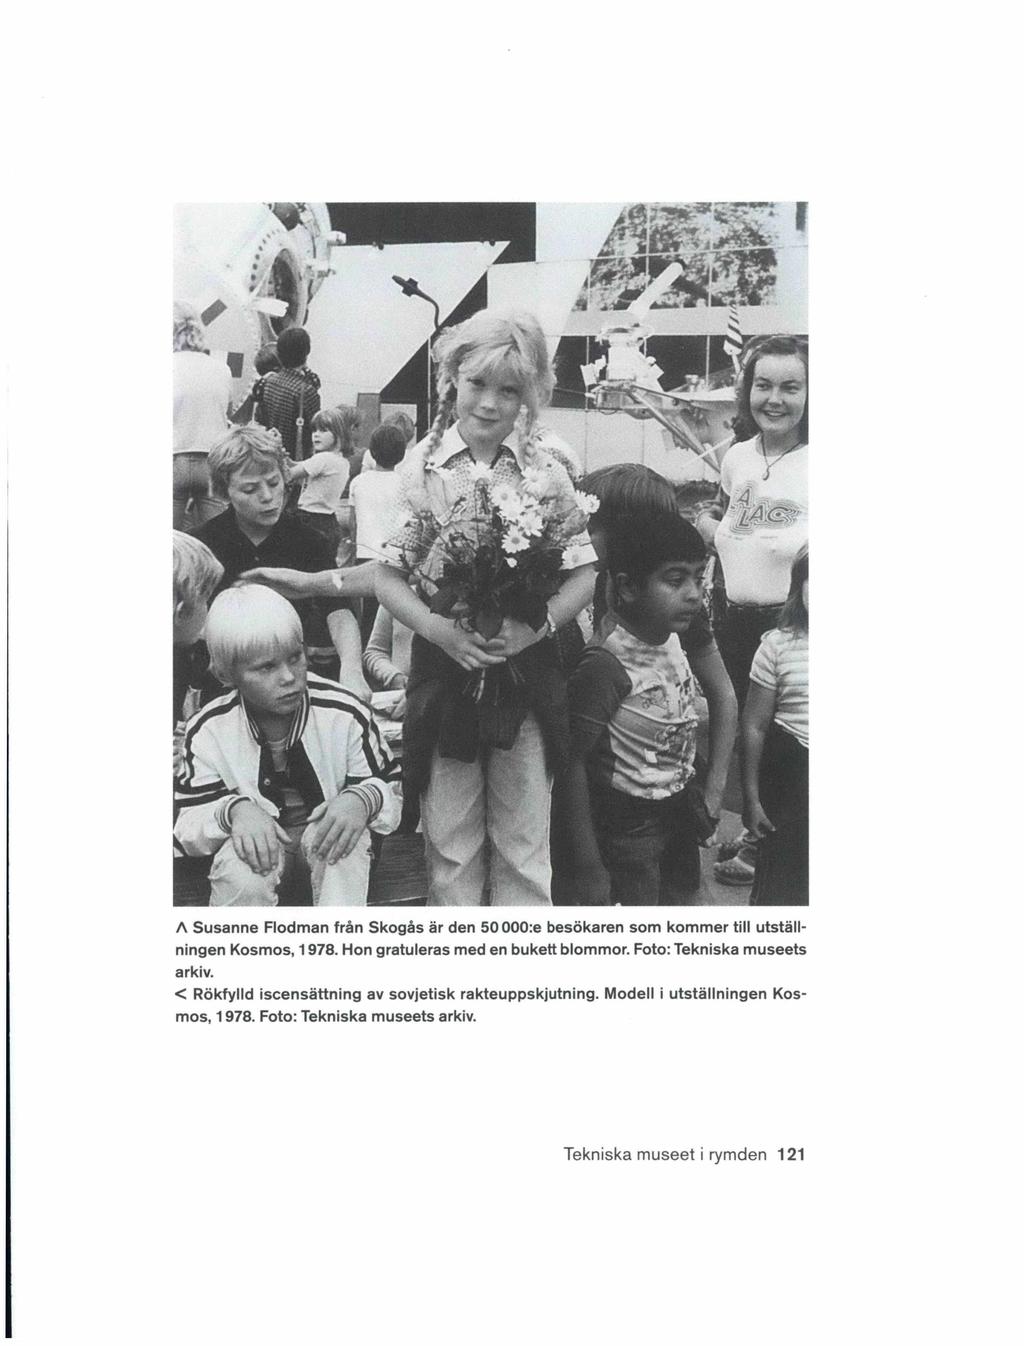 A Susanne Flodman från Skogås är den 50 000:e besökaren som kommer till utställningen Kosmos, 1978. Hon gratuleras med en bukett blommor.